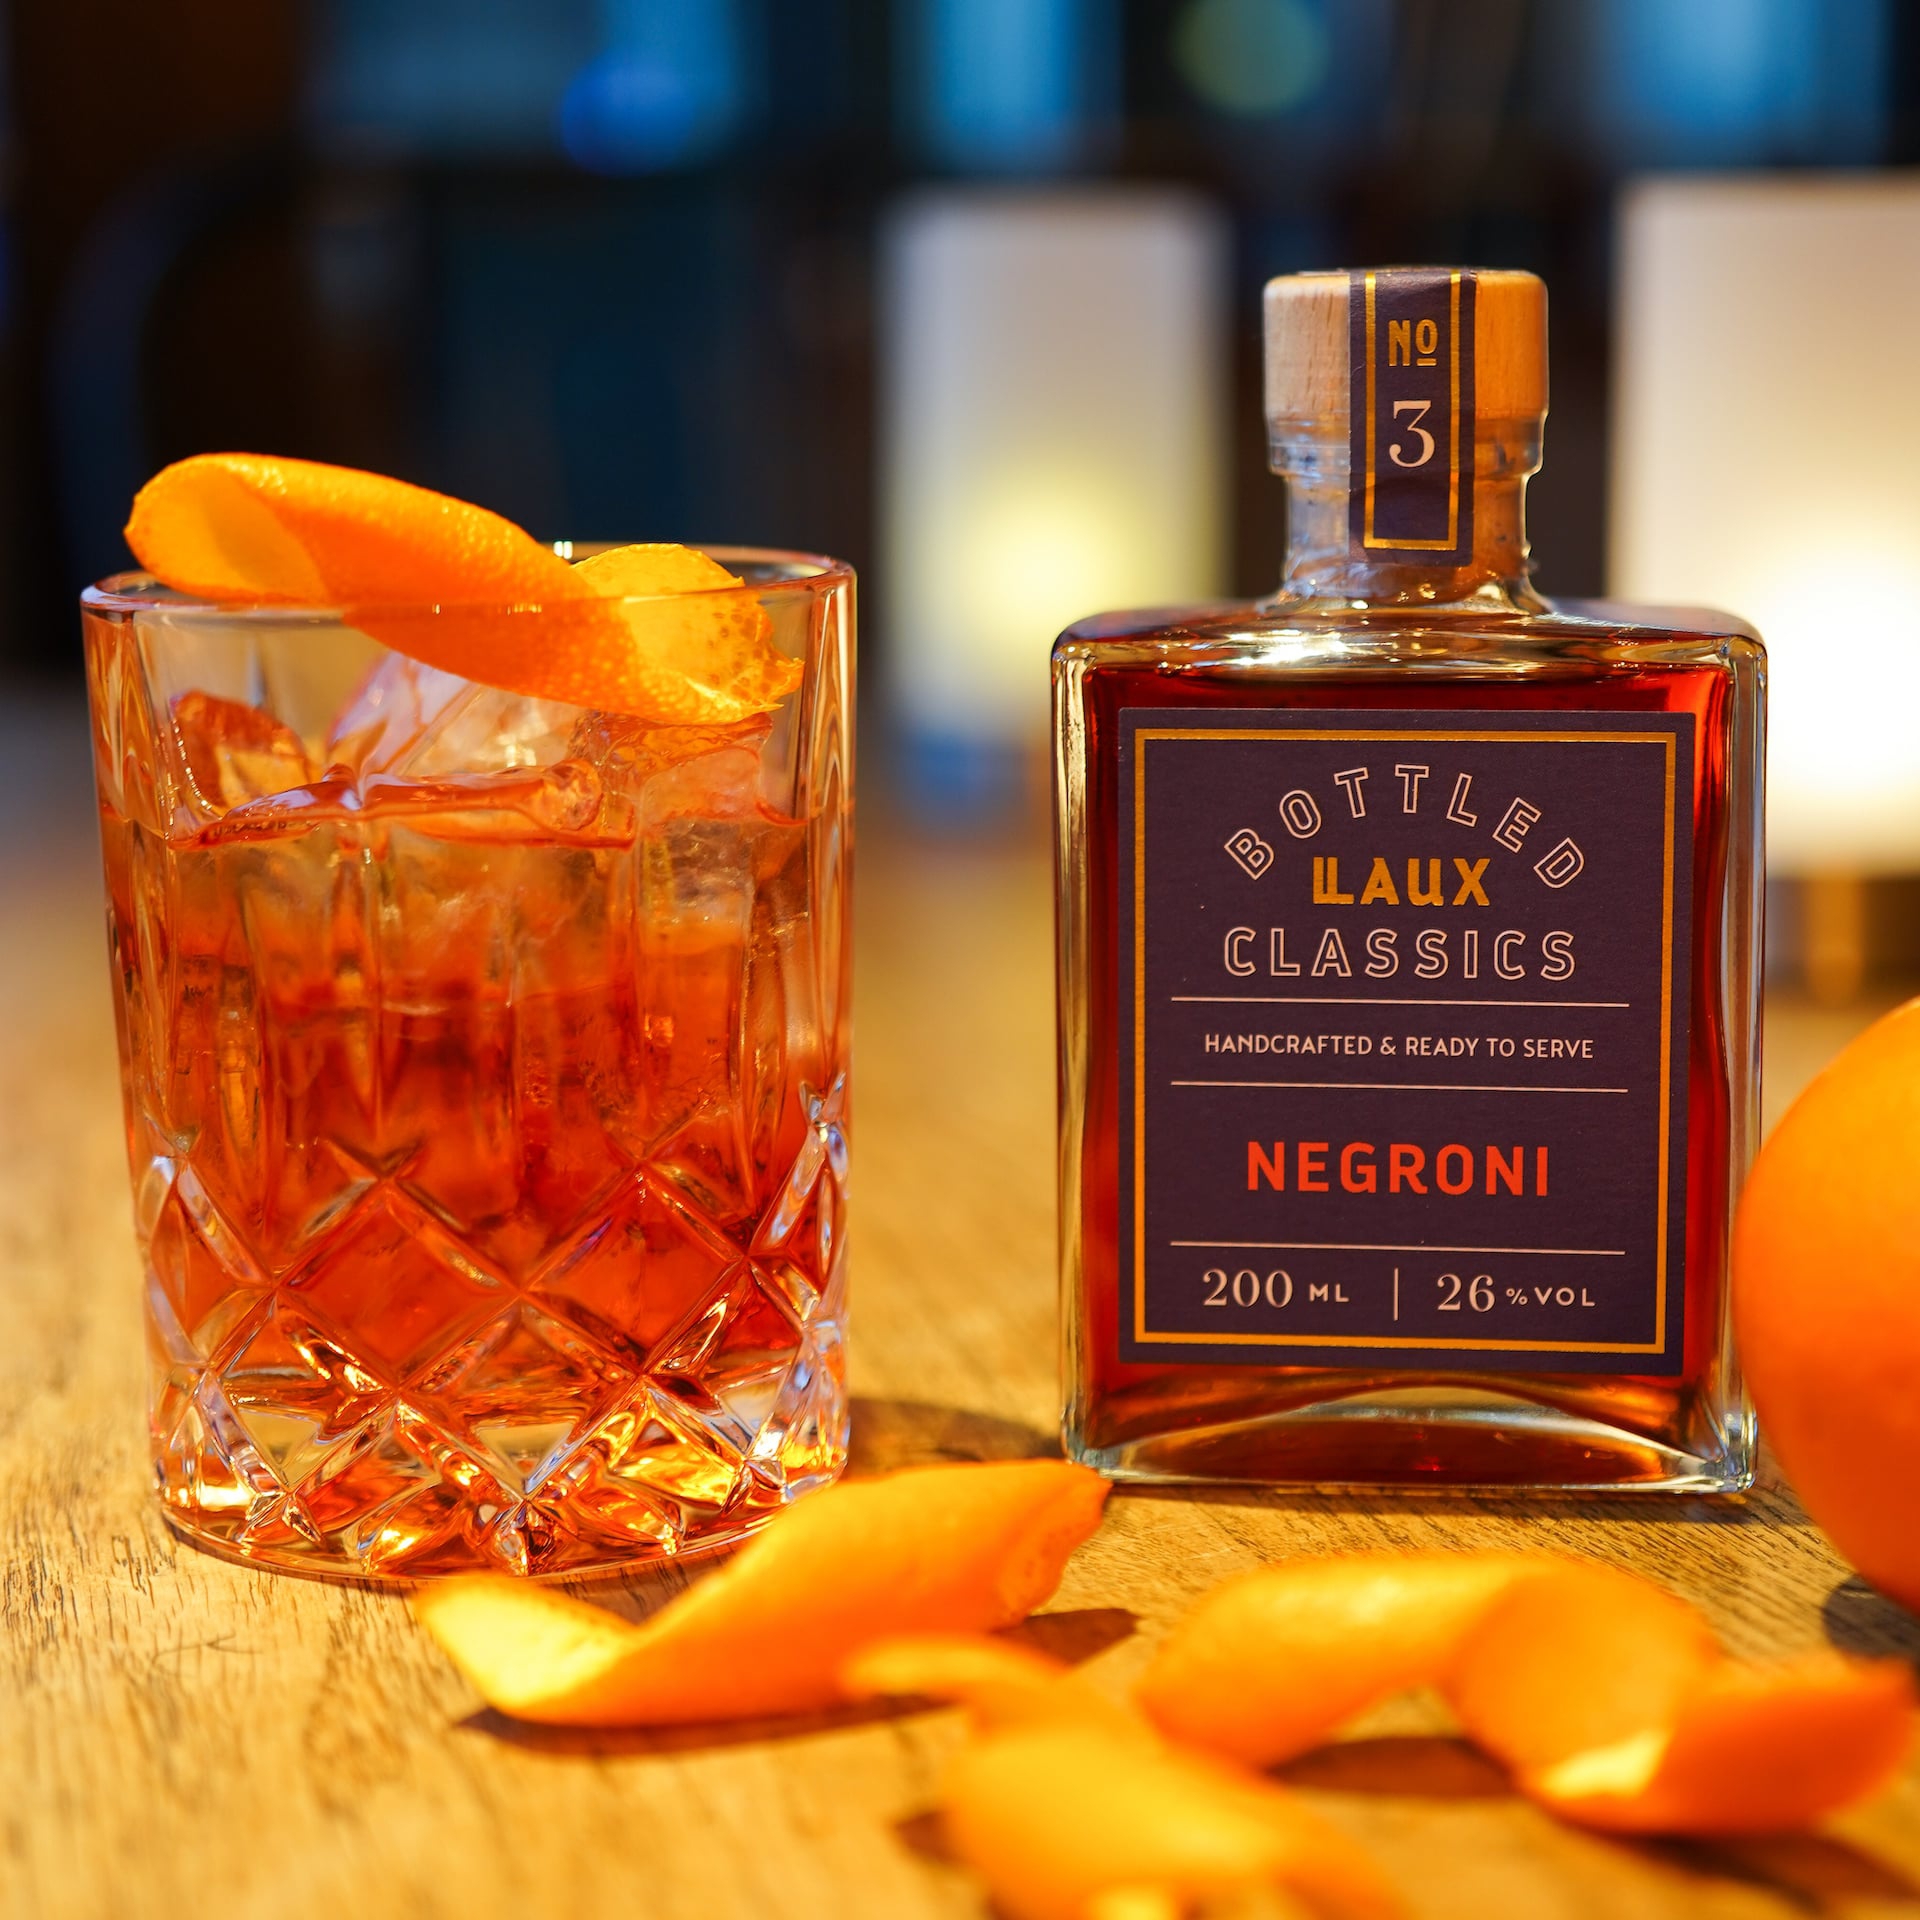 LAUX Negroni Bottled Classic im Cocktail Glas mit Orangenscheiben